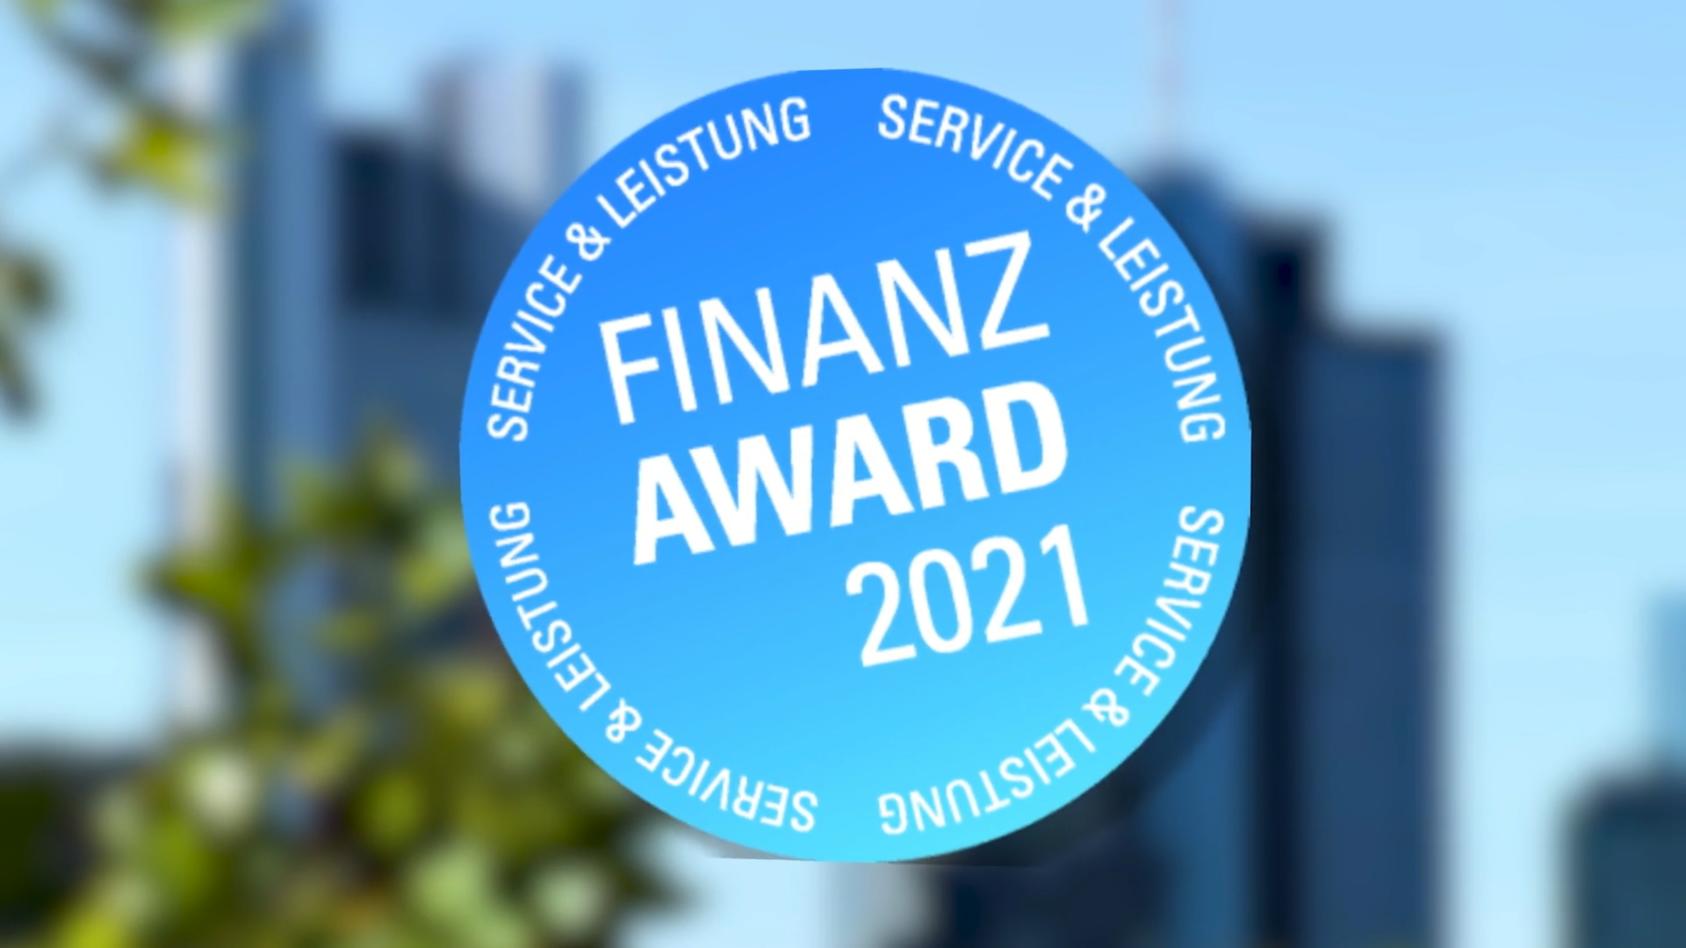 Finanz-Award 2021: So gingen die Tester vor Faire Leistung zu fairen Konditionen